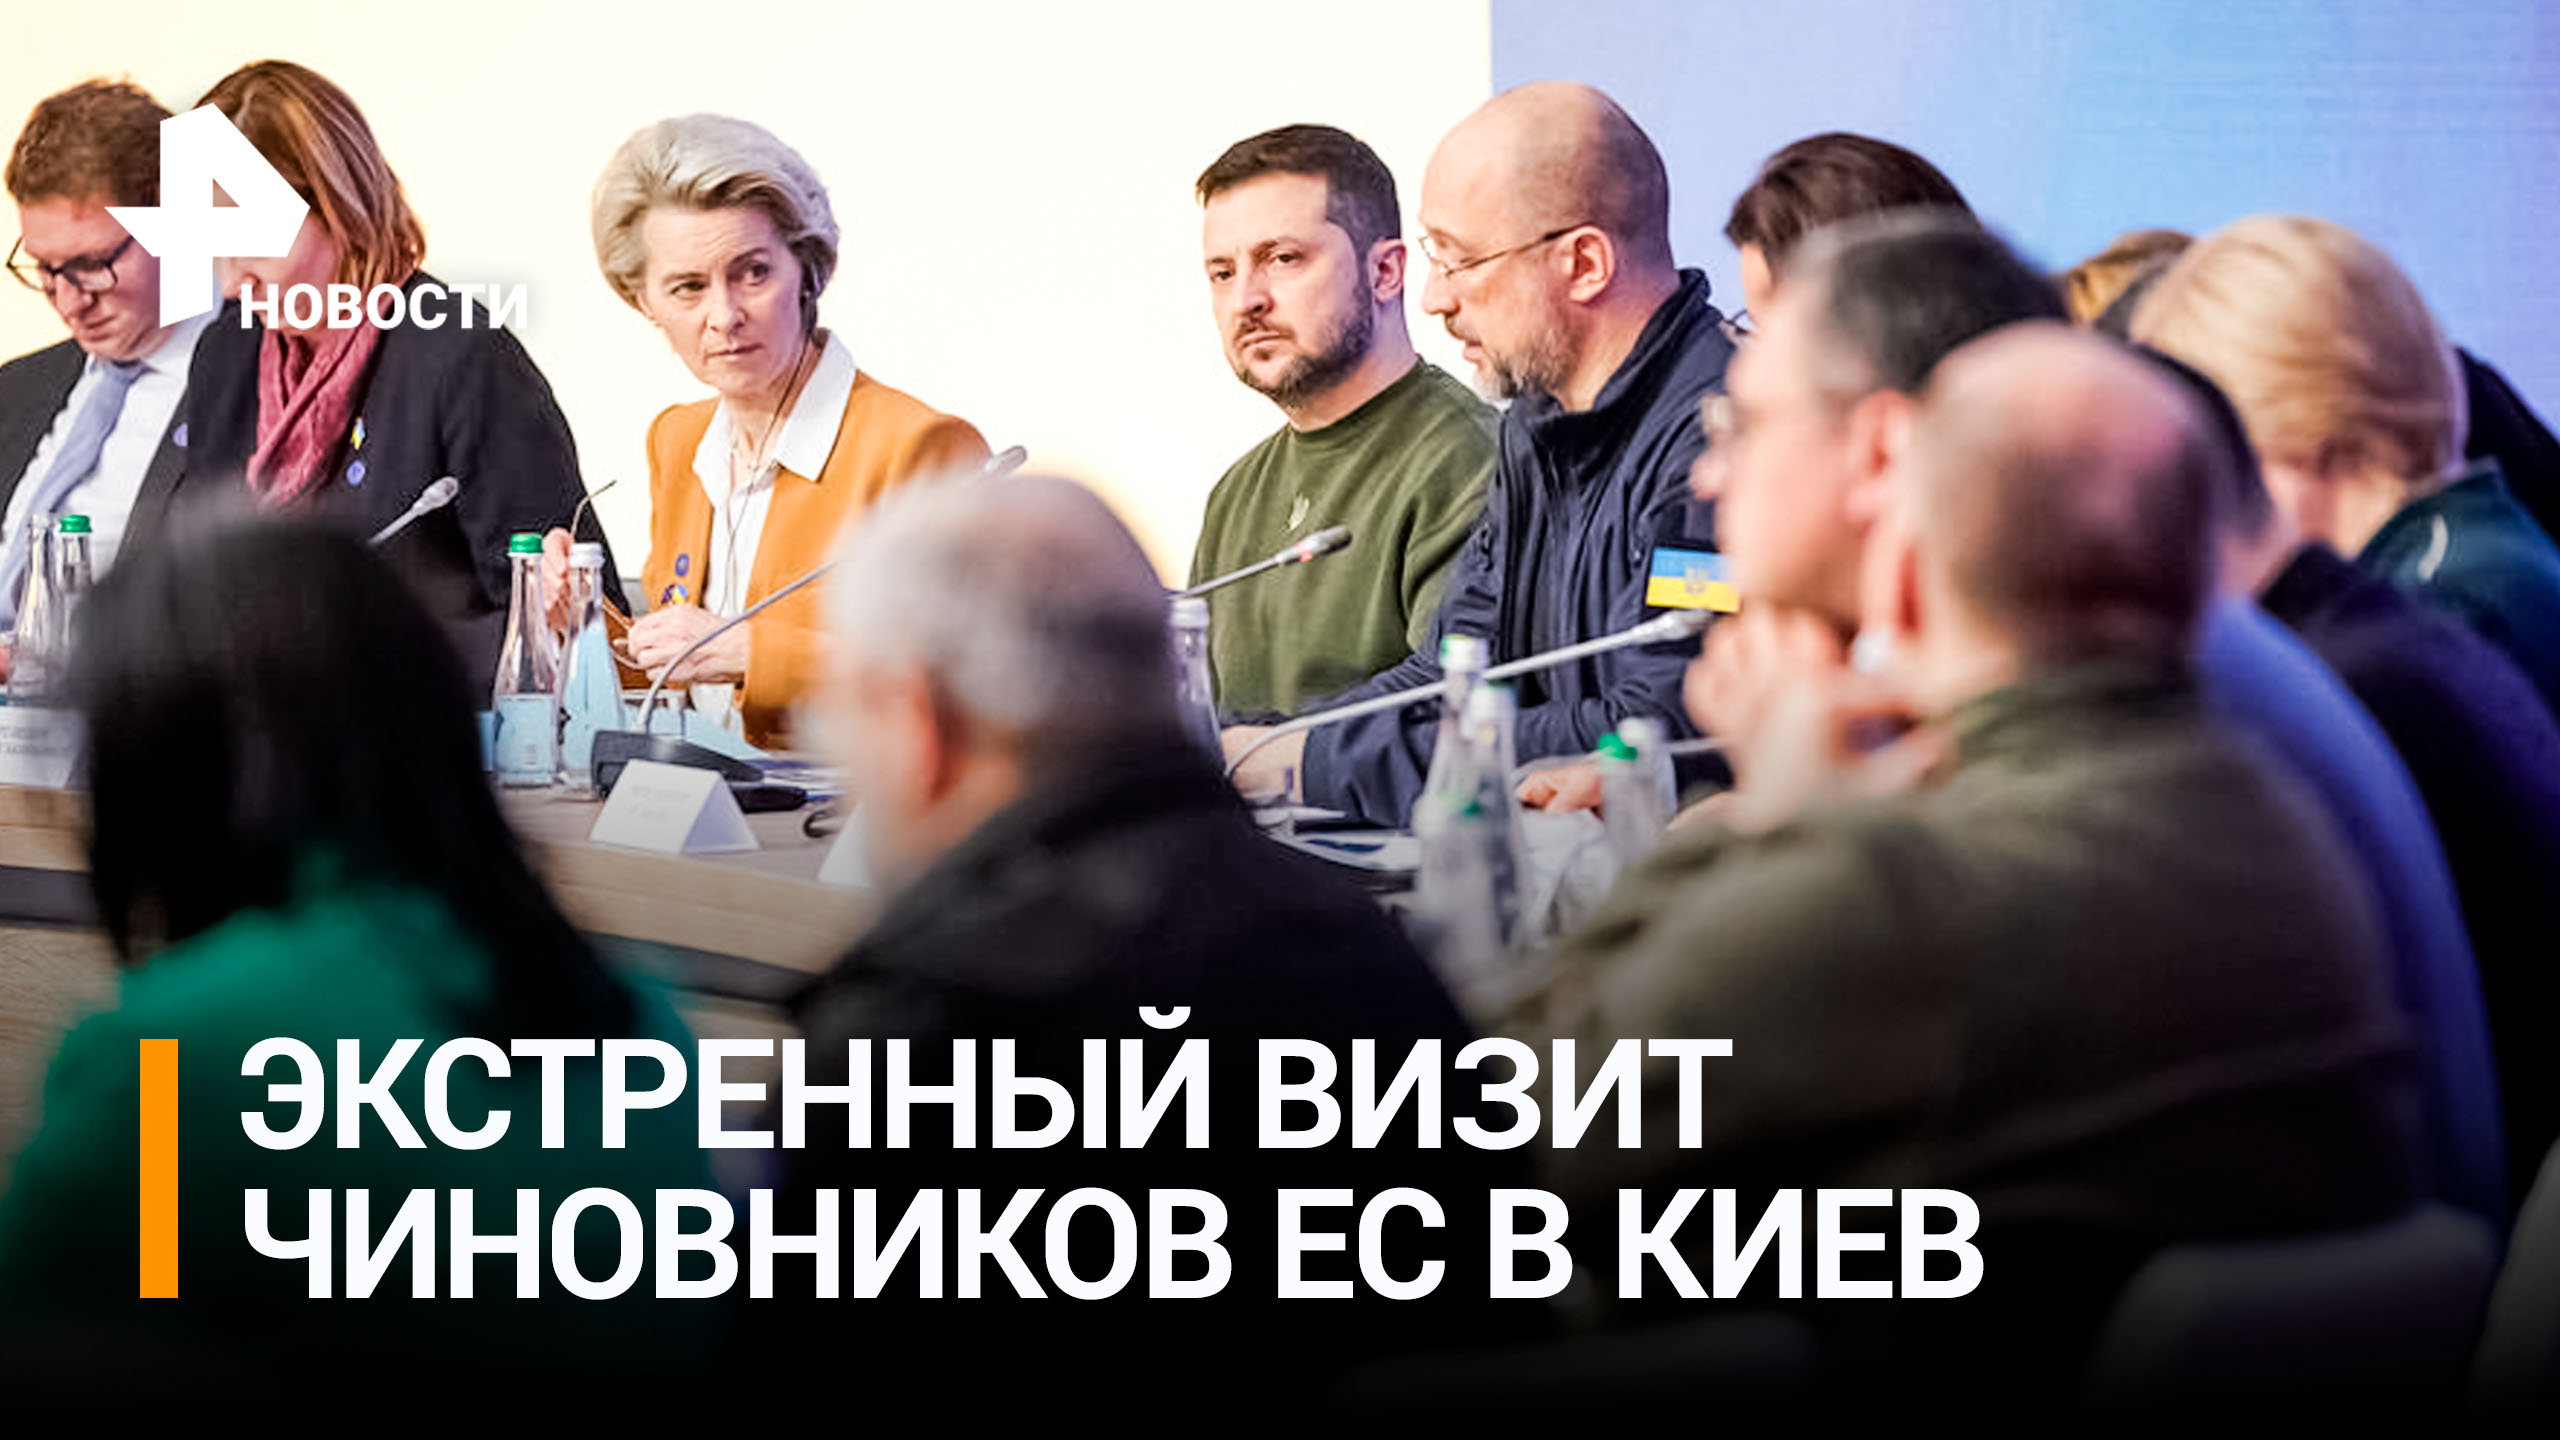 Европейские чиновники в обстановке строгой секретности приехали в Киев / РЕН Новости